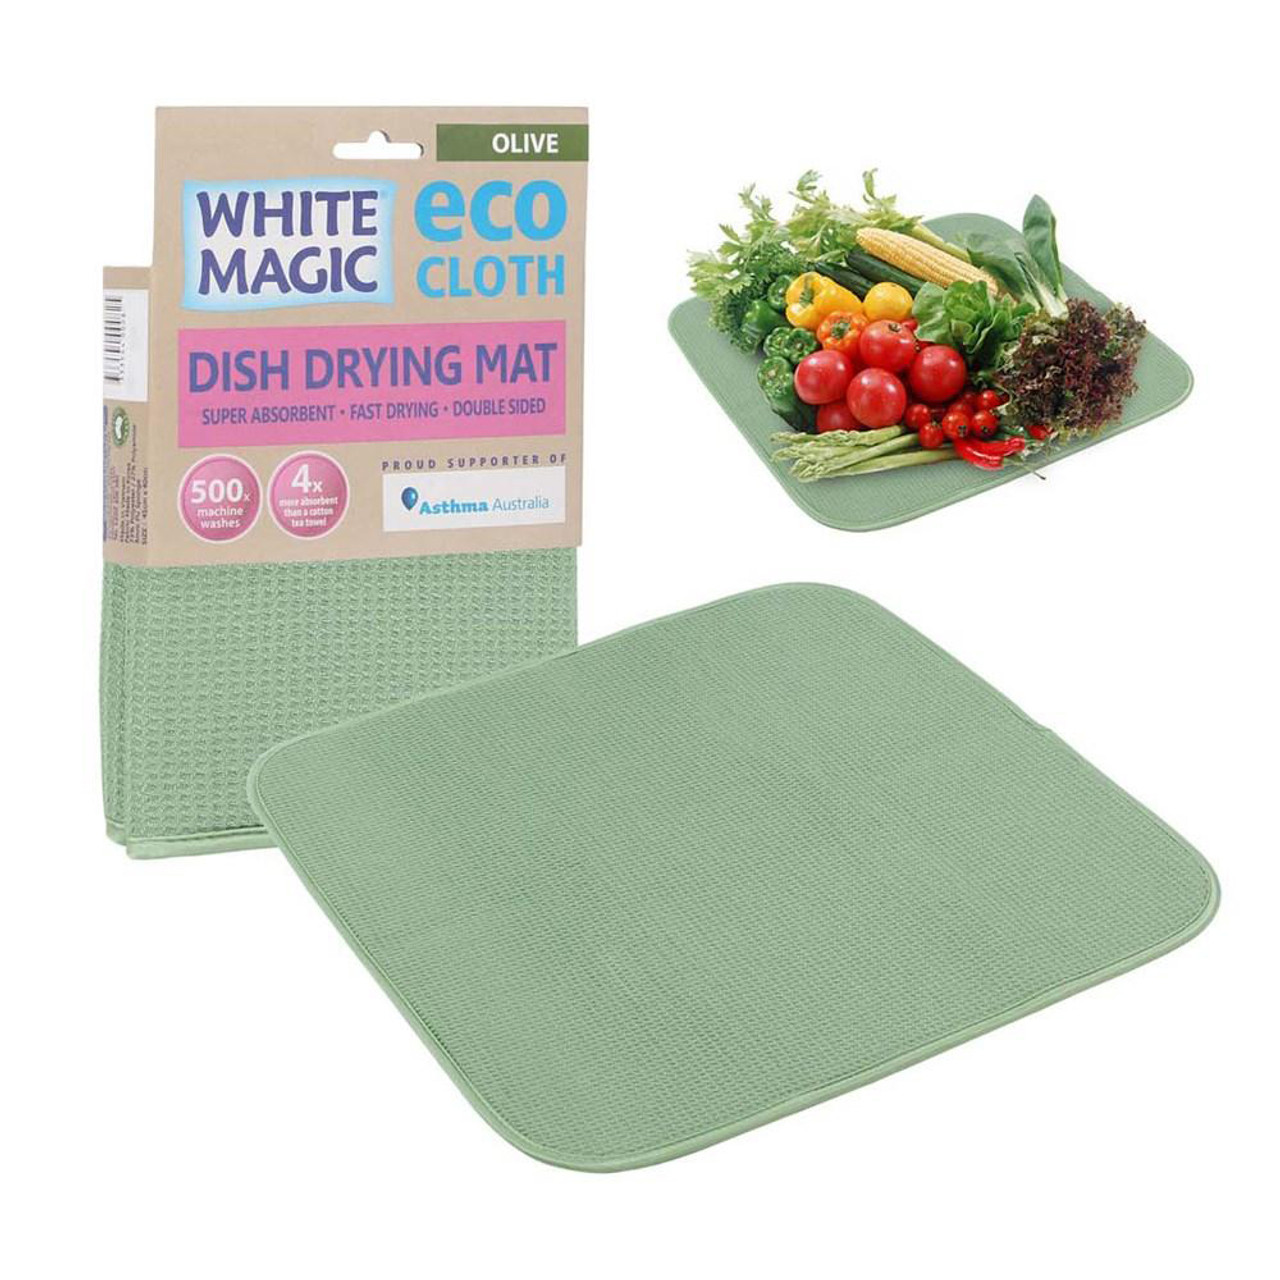 White Magic Eco Cloth Dish Drying Mat Snow White Brand New